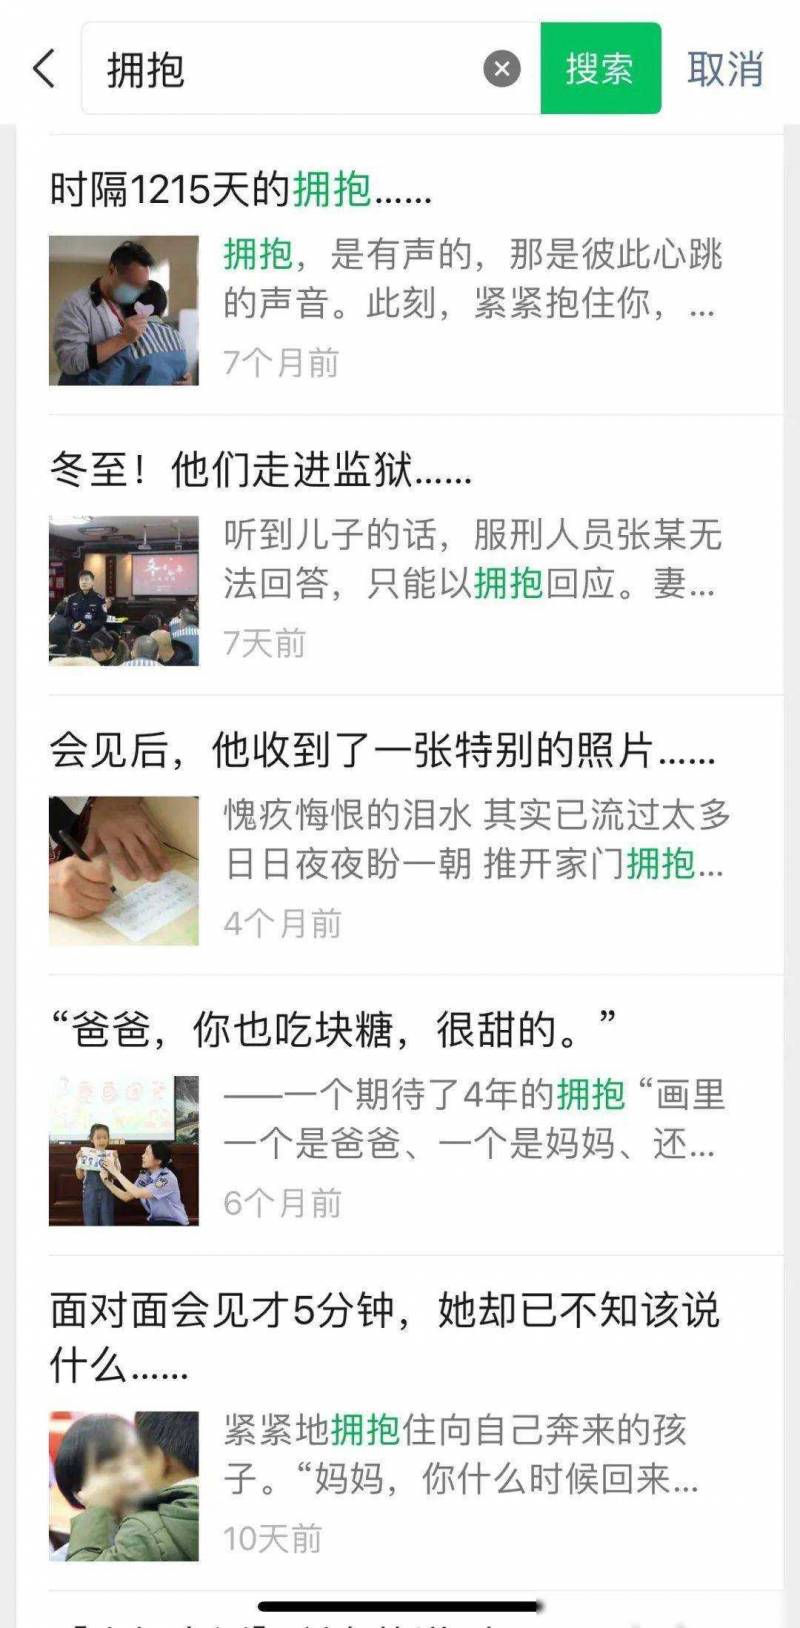 江囌監獄的微博眡頻揭示了監獄系統如何通過新媒躰與公衆溝通。